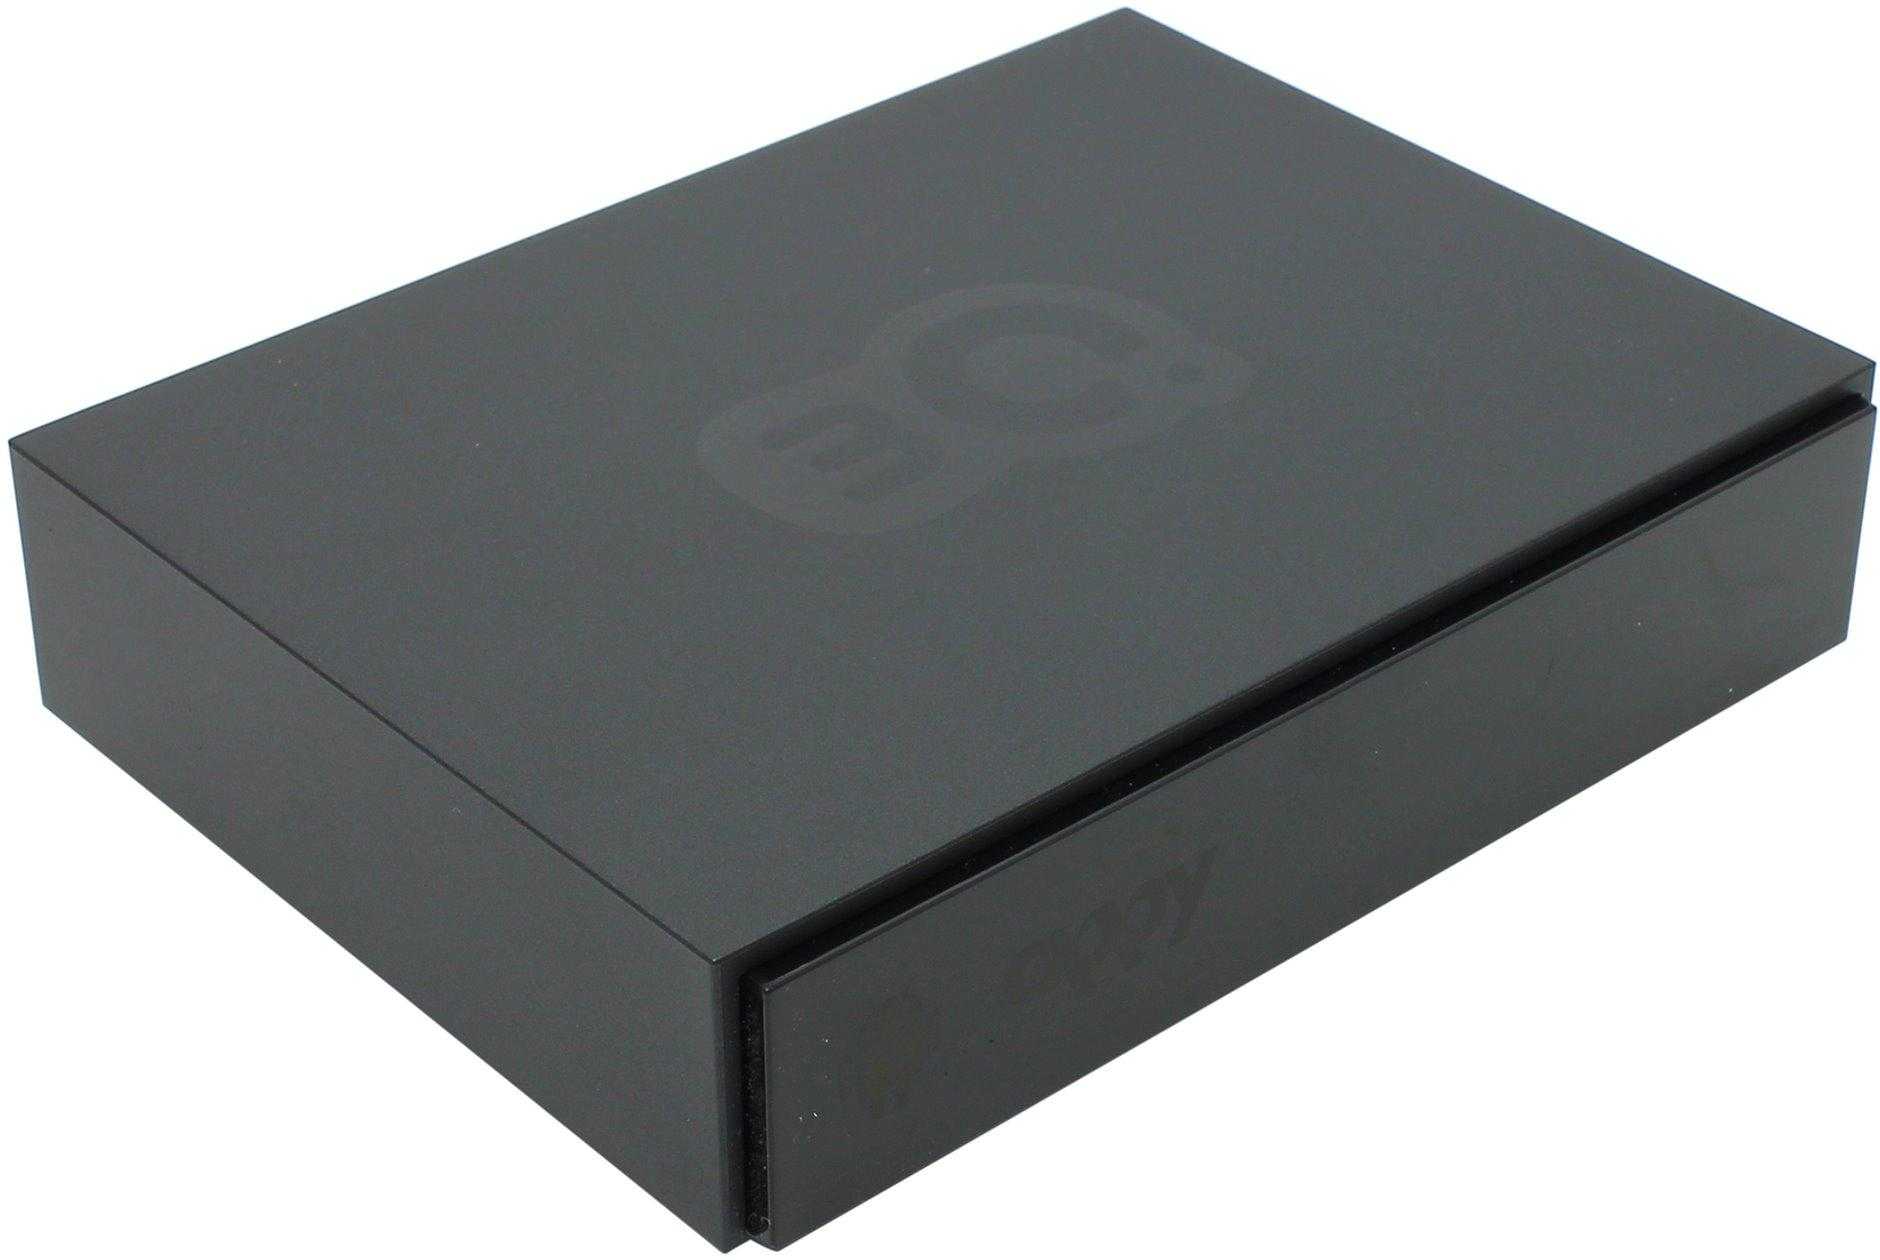 Медиаплеер 3q 3qmmp-ab492hw — купить, цена и характеристики, отзывы